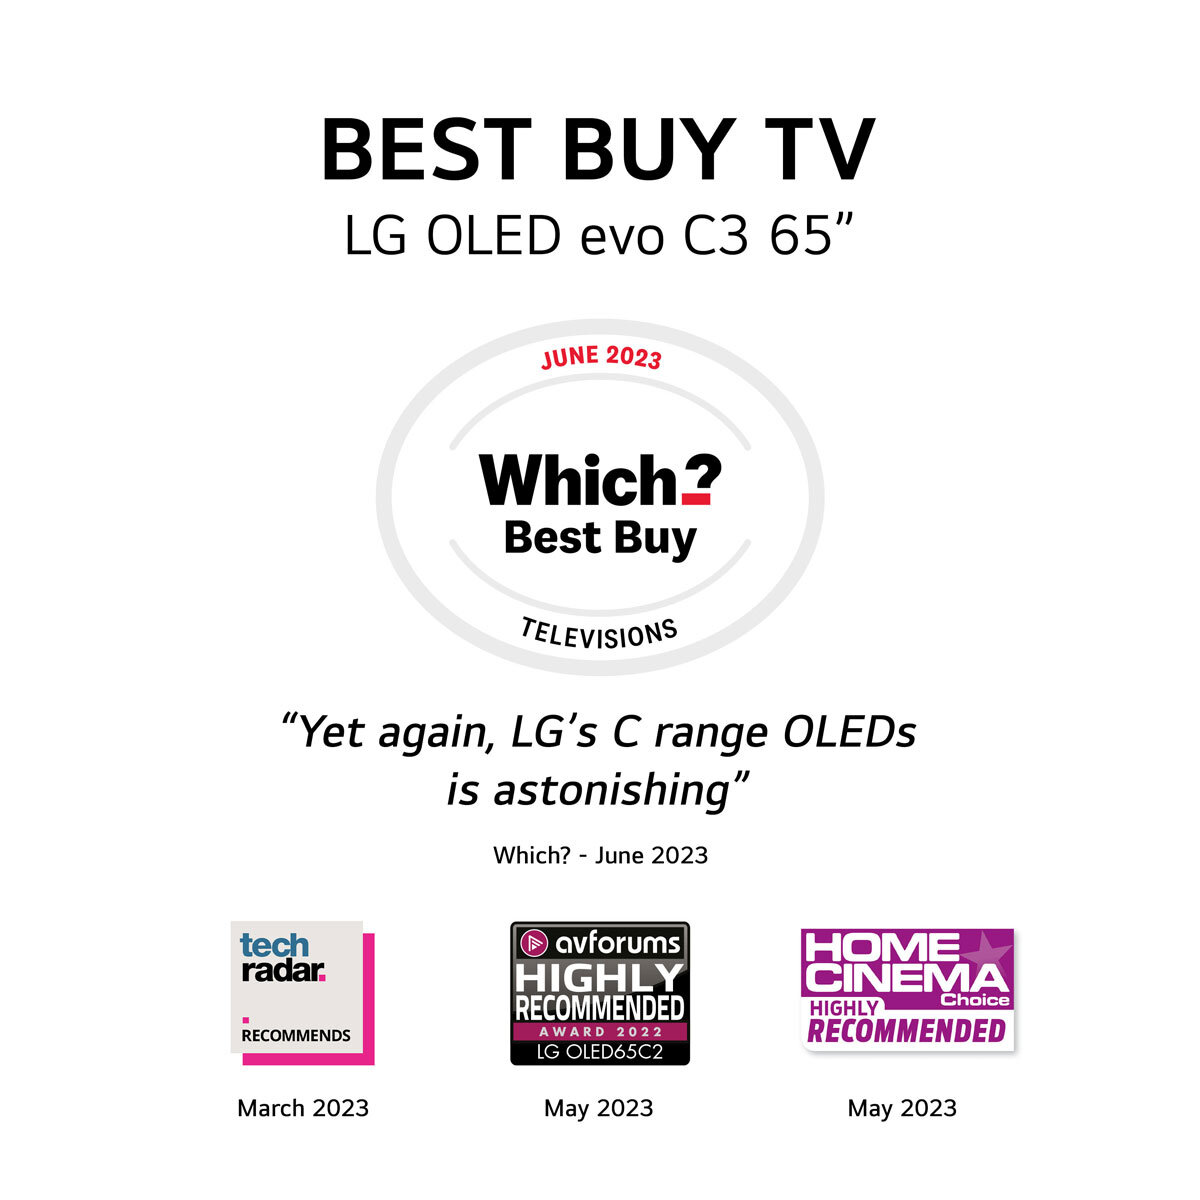 LG OLED65C36LC 65 Inch OLED 4K Ultra HD Smart TV